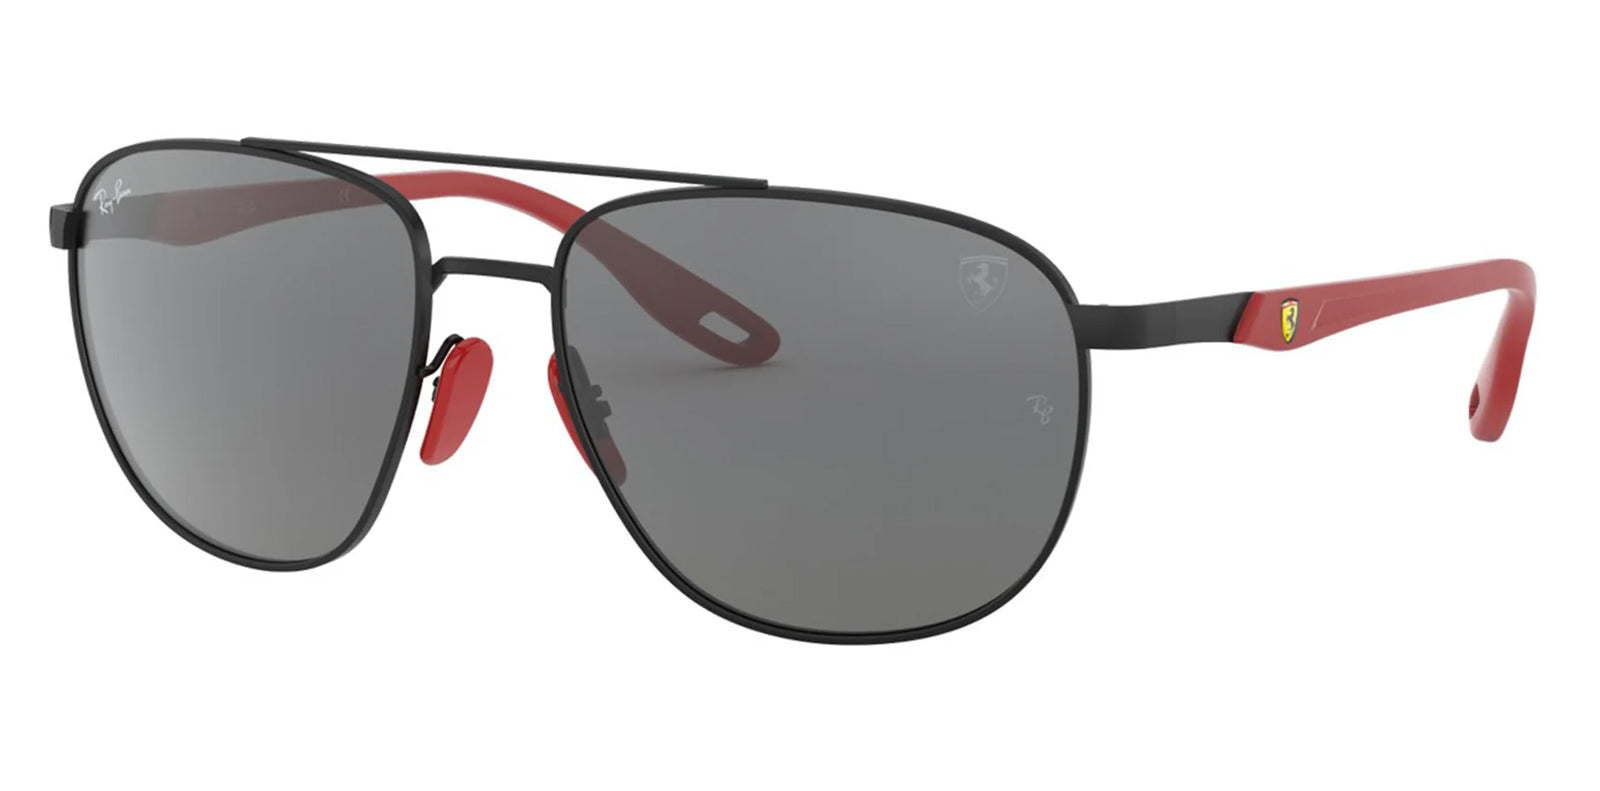 
Ray-Ban RB3659M Scuderia Ferrari Collection Men's Lifestyle Sunglasses 